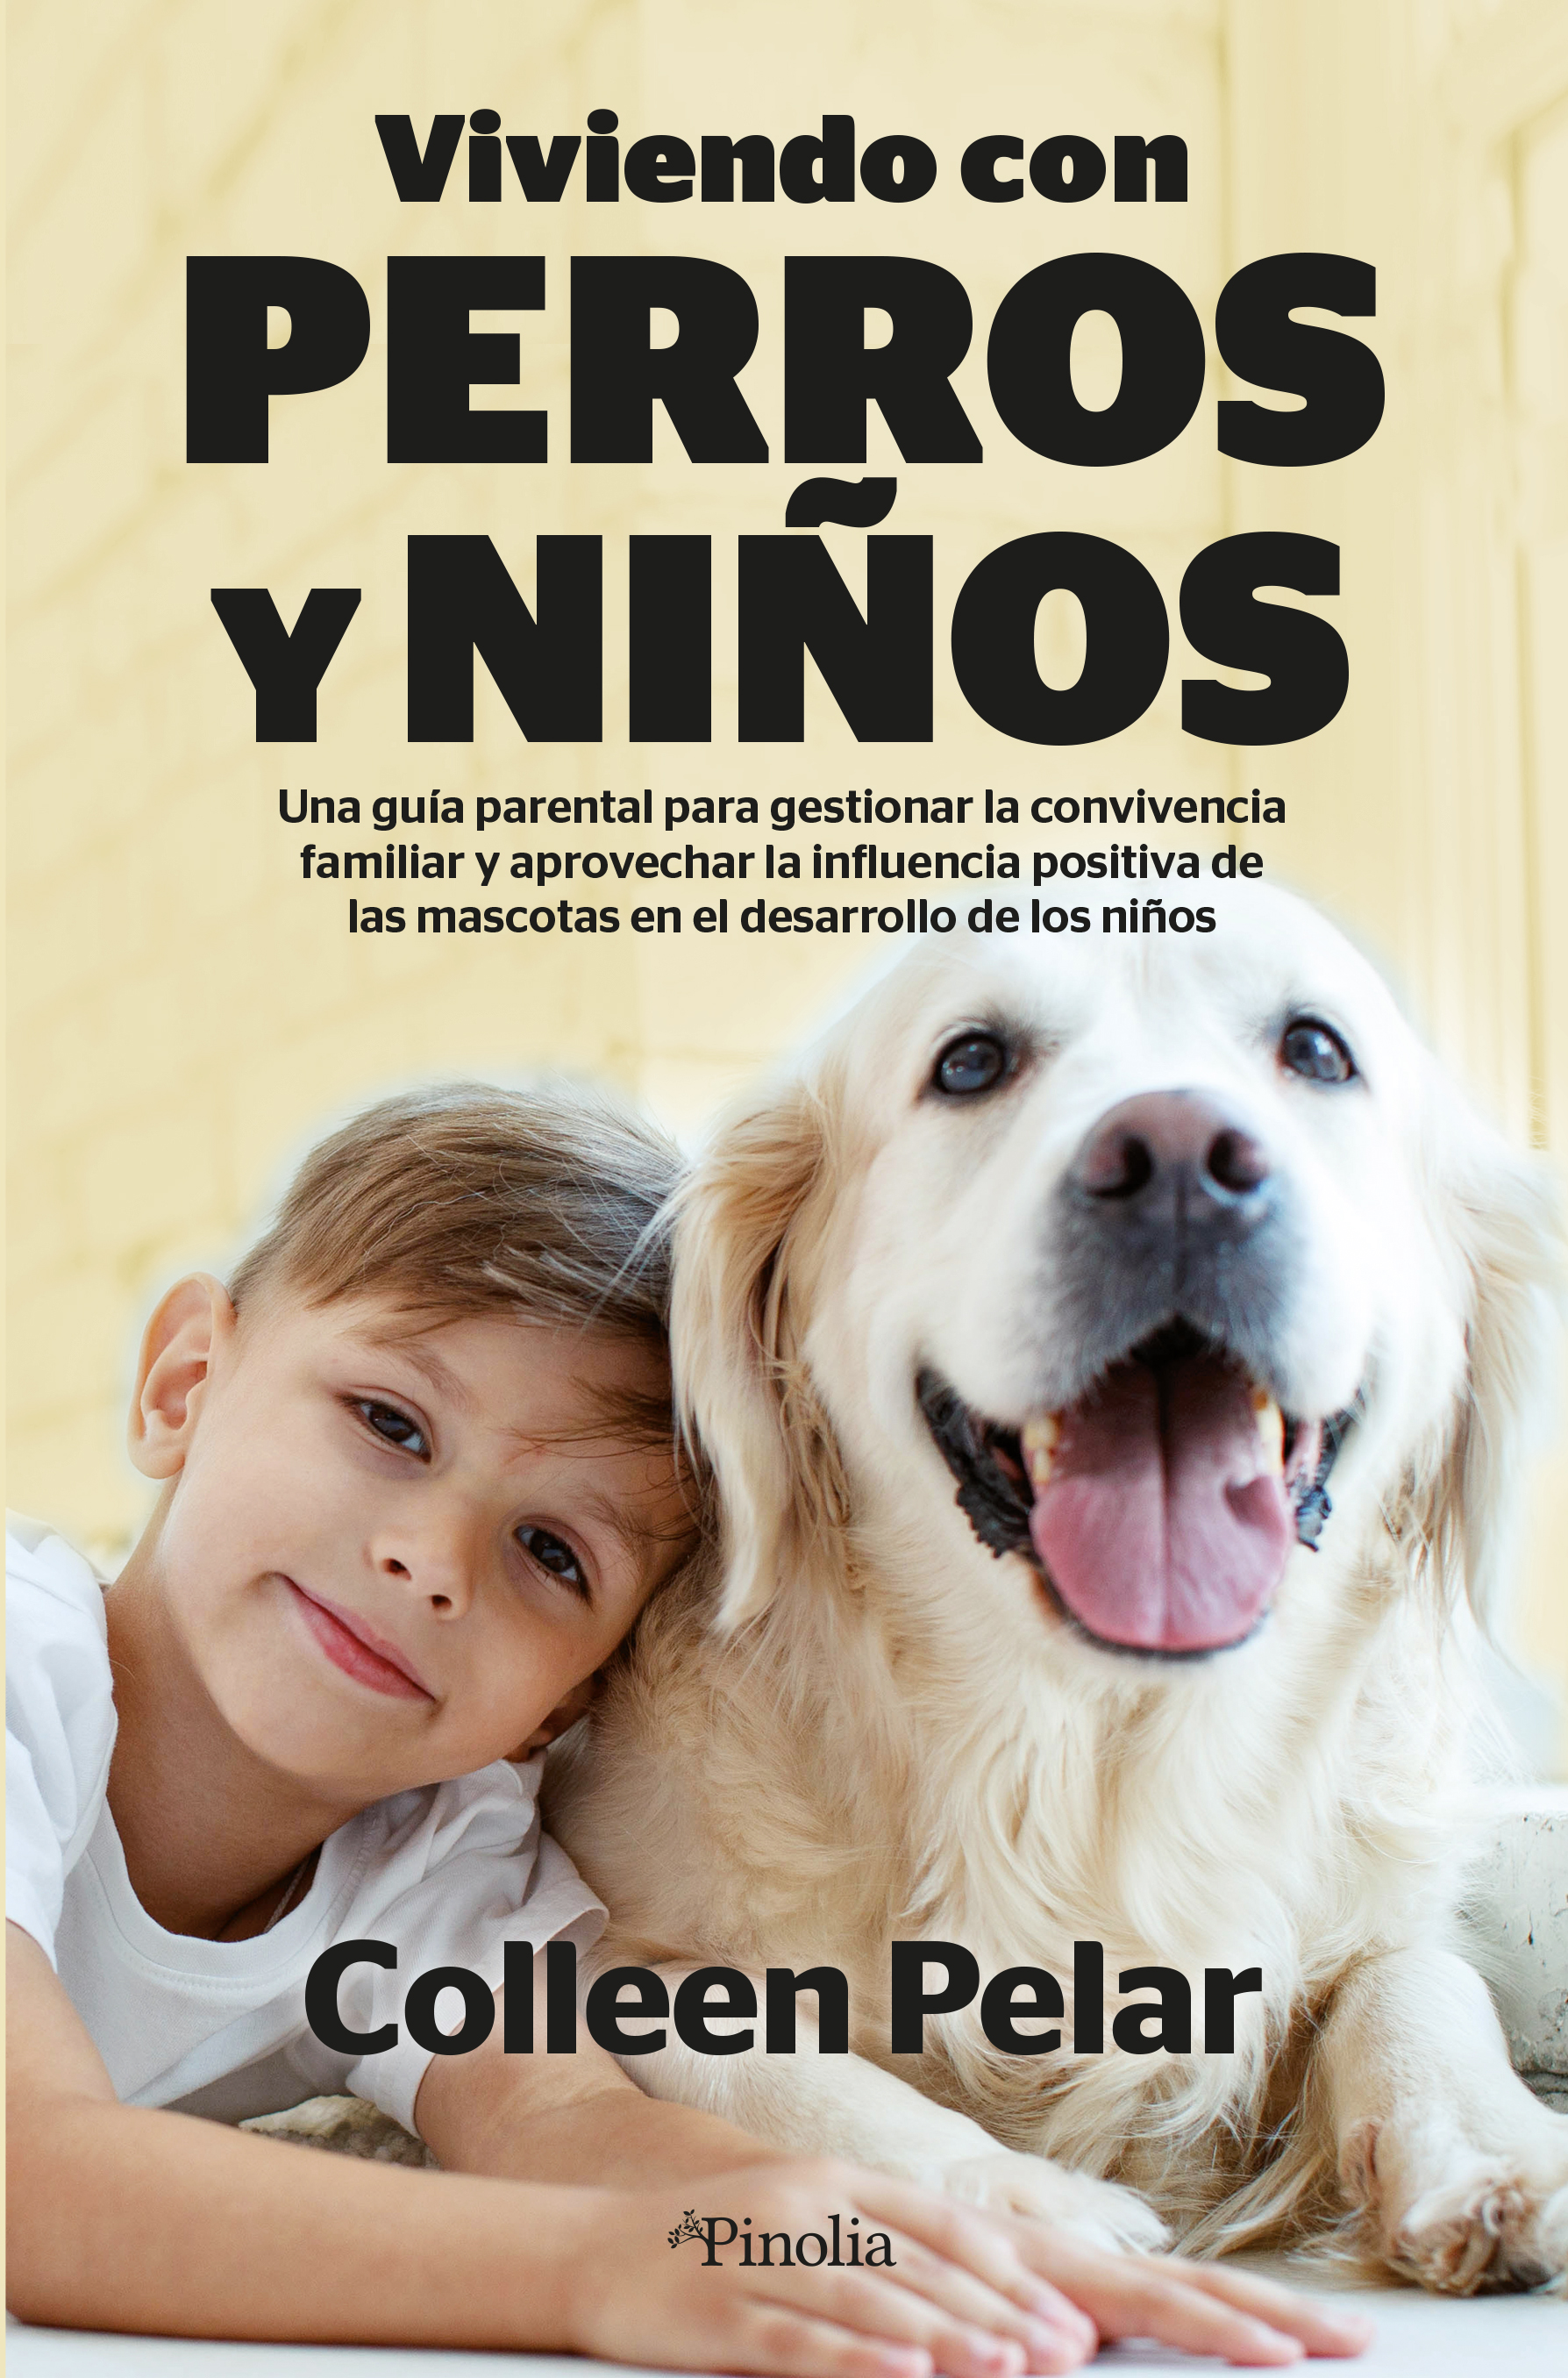 Viviendo con perros y niños - La tienda de libros